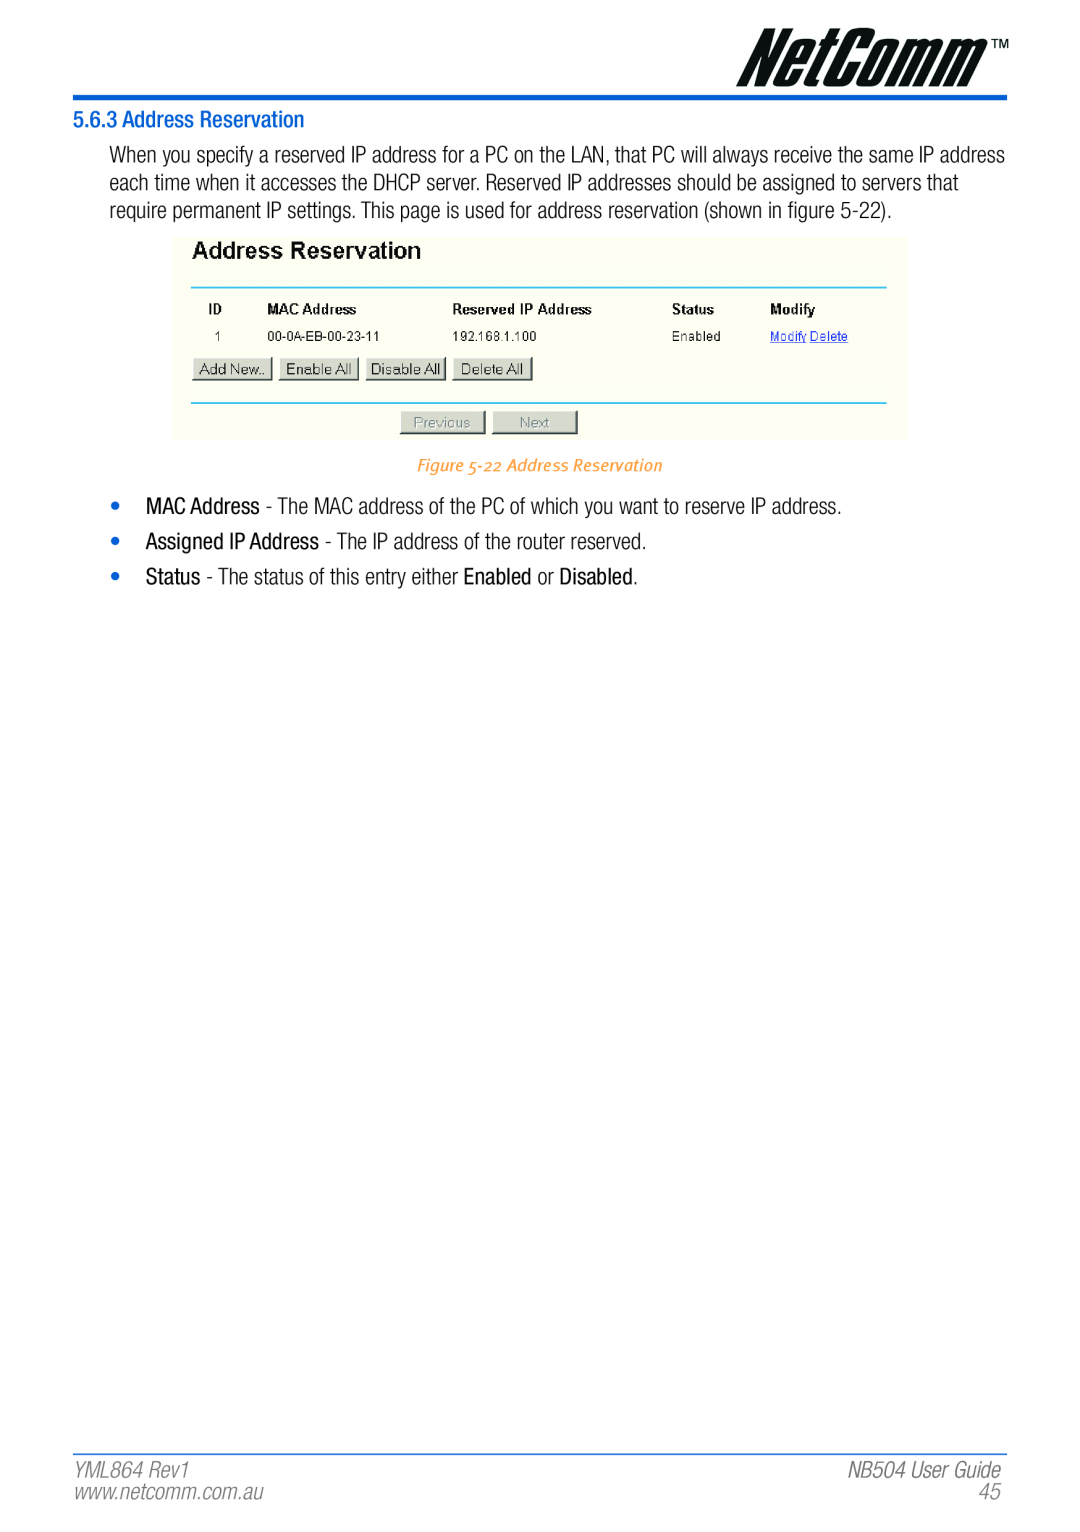 NetComm manual YML864 Rev1, 22 Address Reservation, NB504 User Guide 